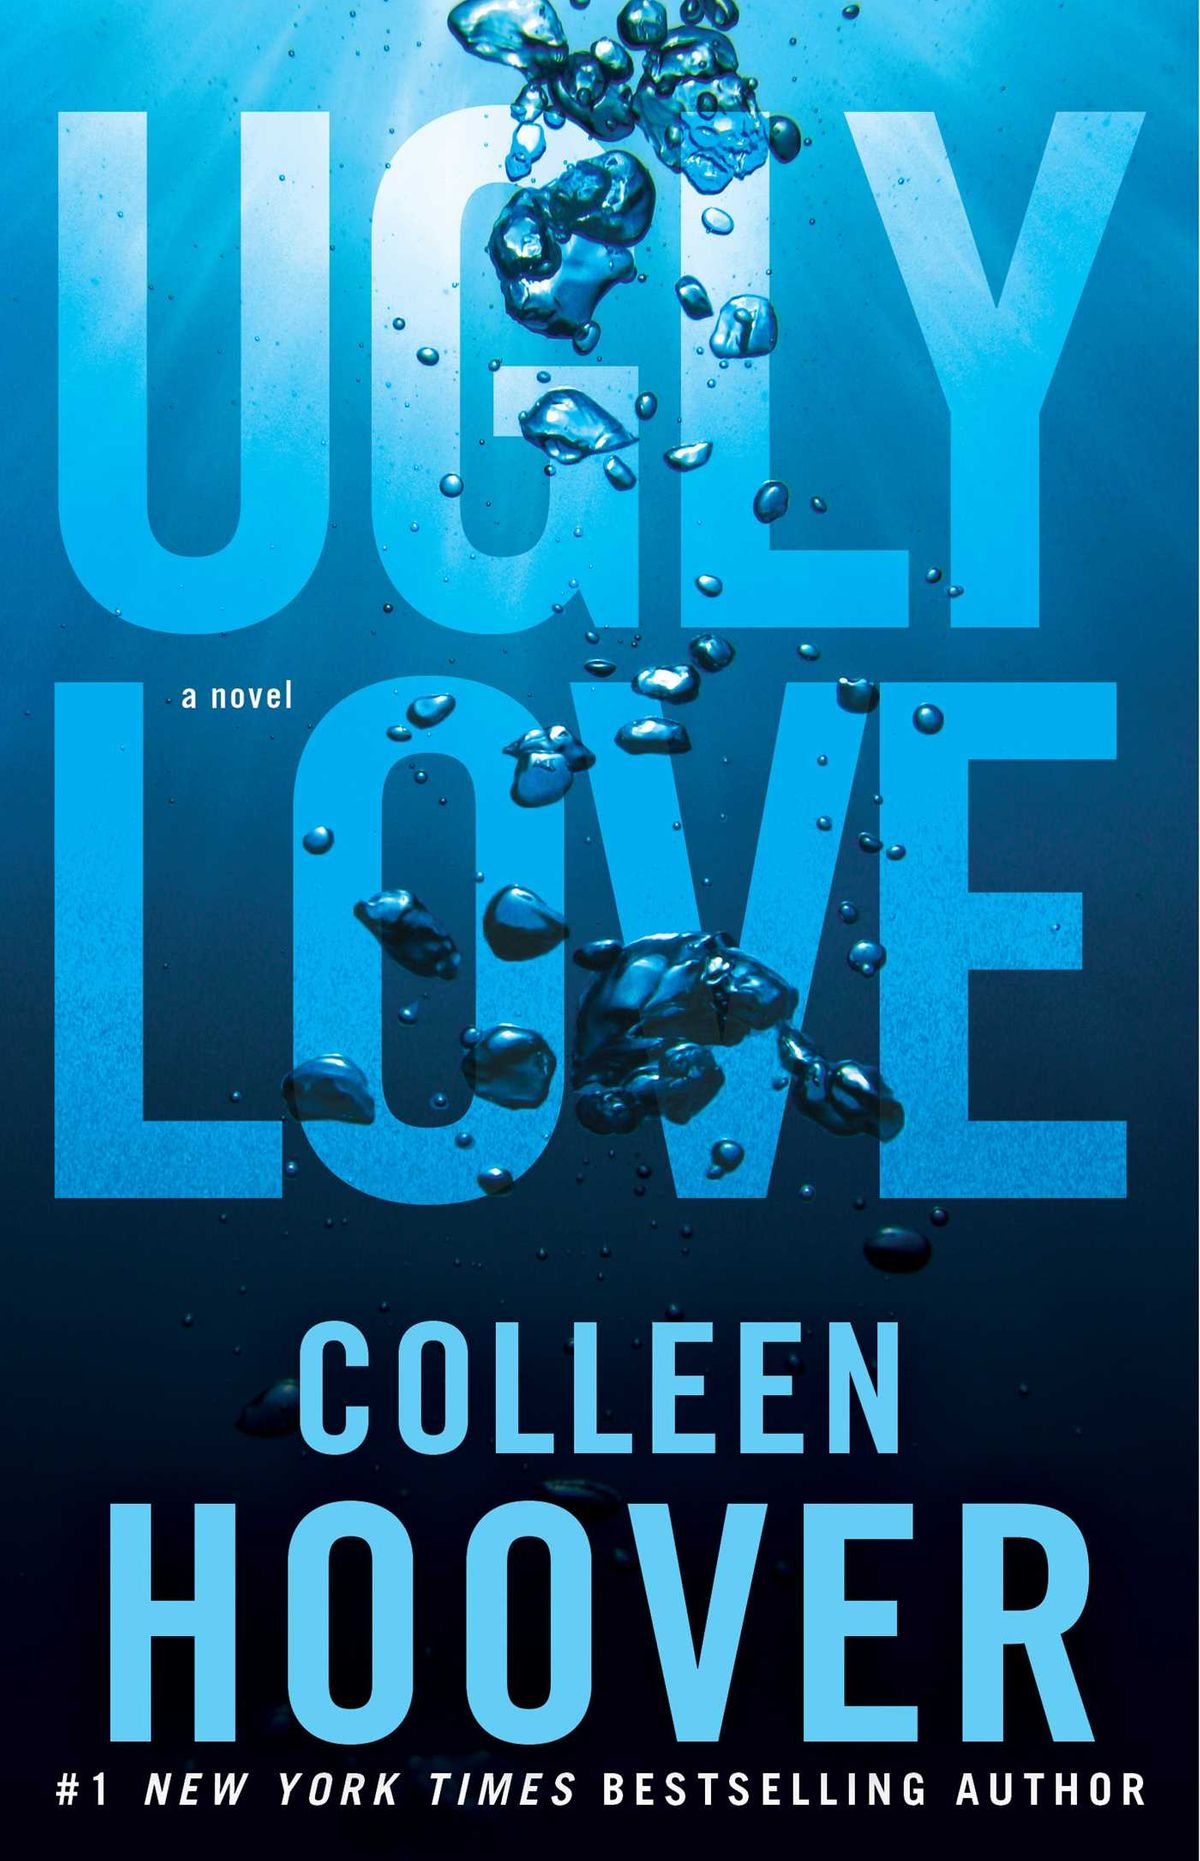 Ugly Love de Colleen Hoover